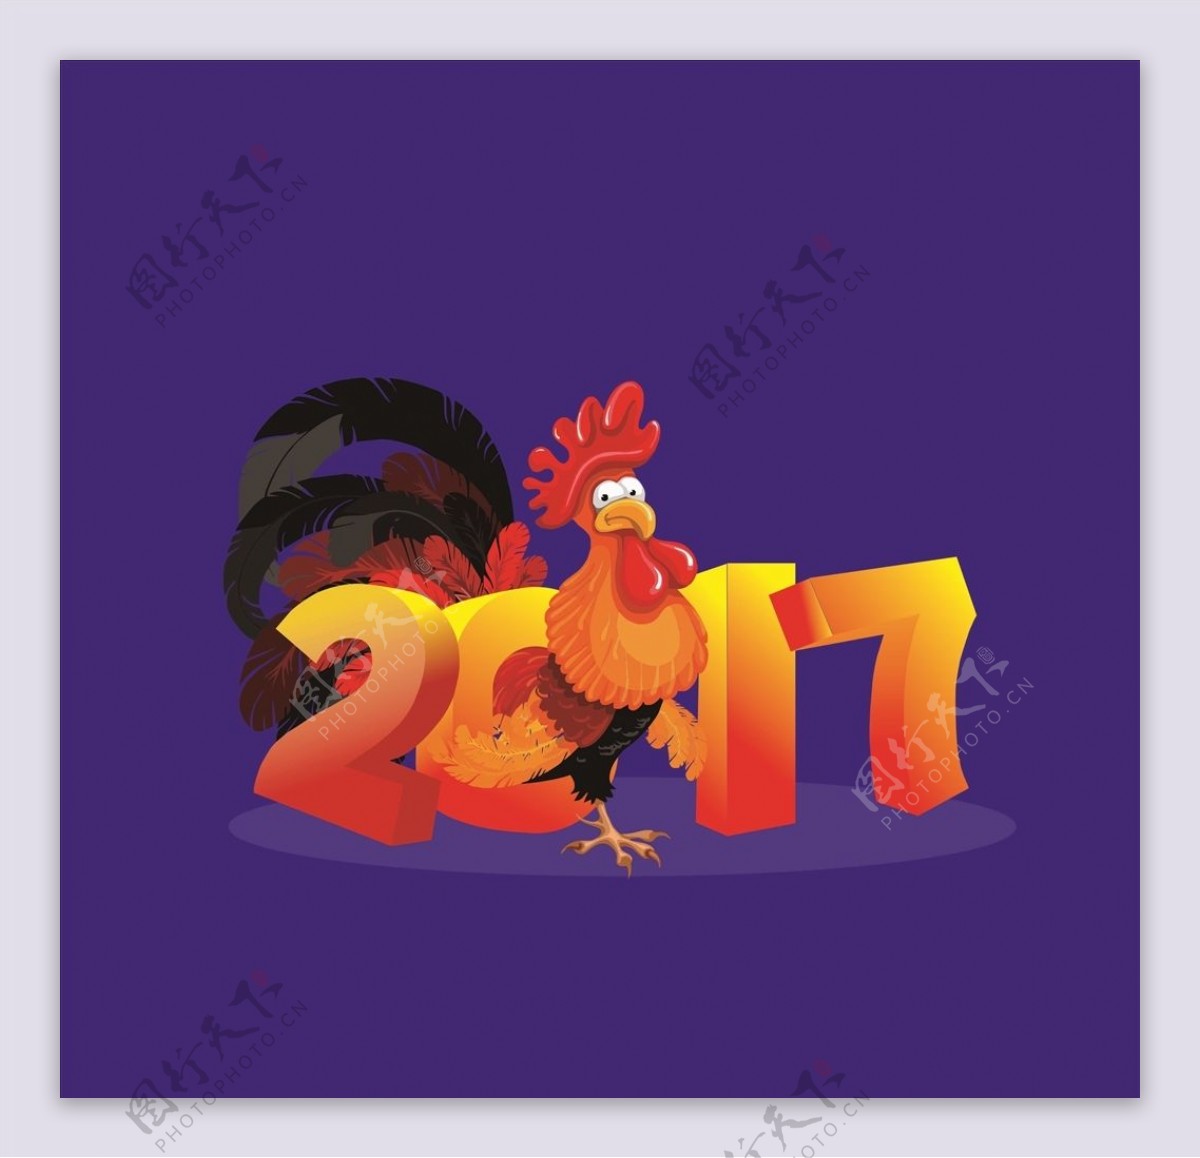 鸡年2017